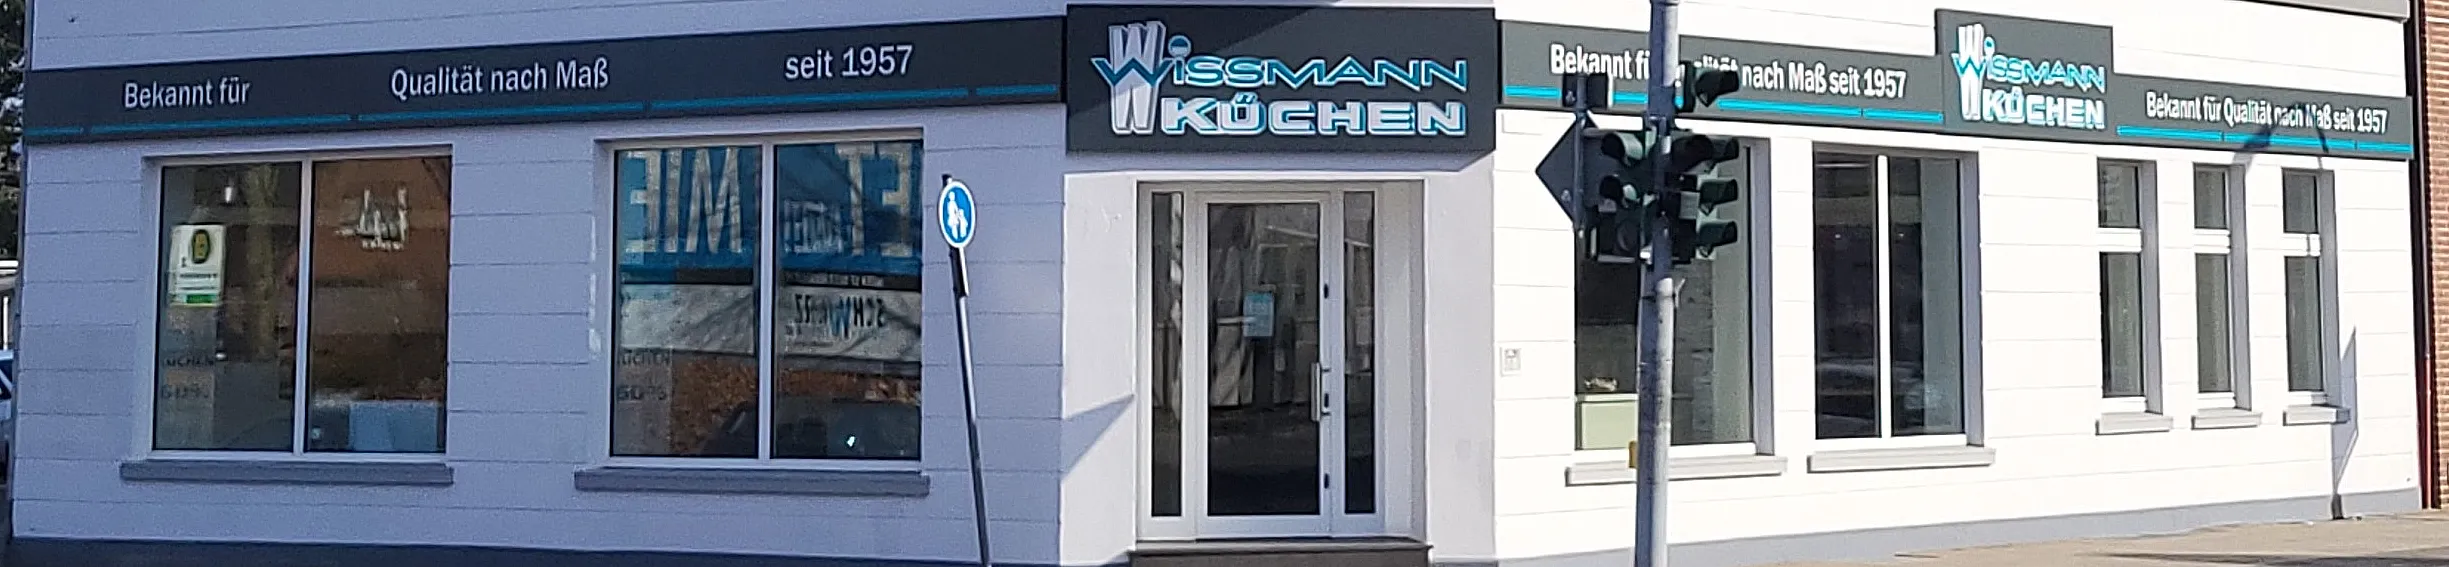 wissmann-kuechen-top-banner